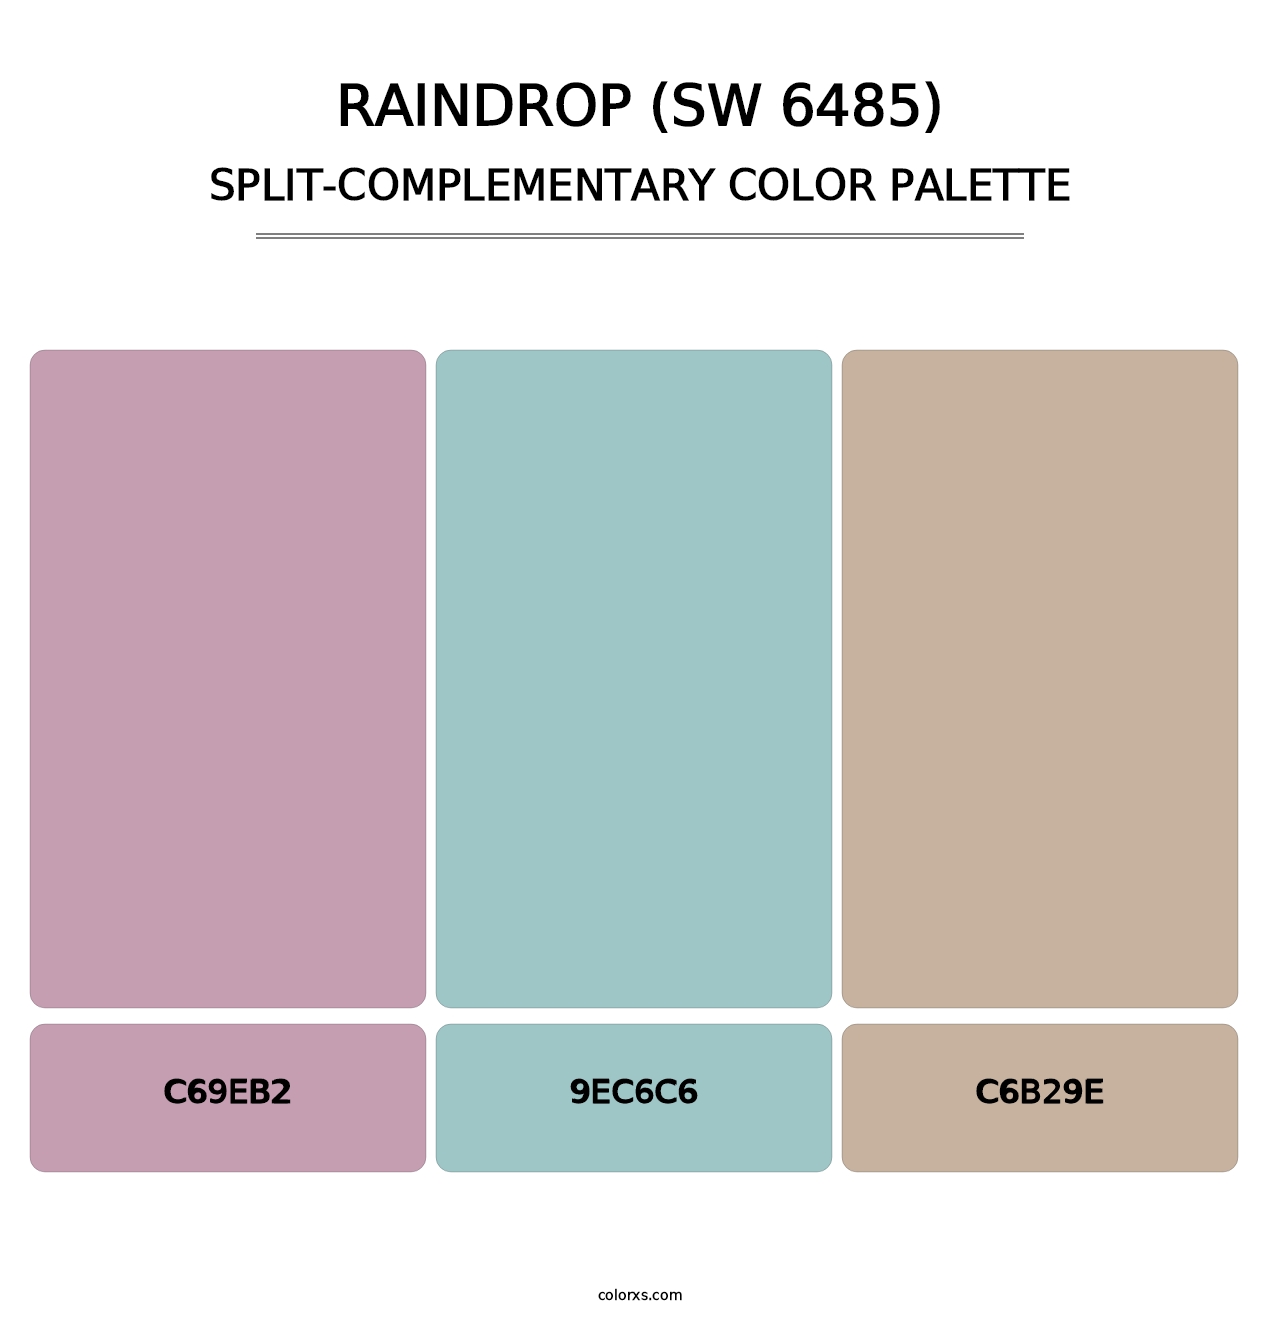 Raindrop (SW 6485) - Split-Complementary Color Palette